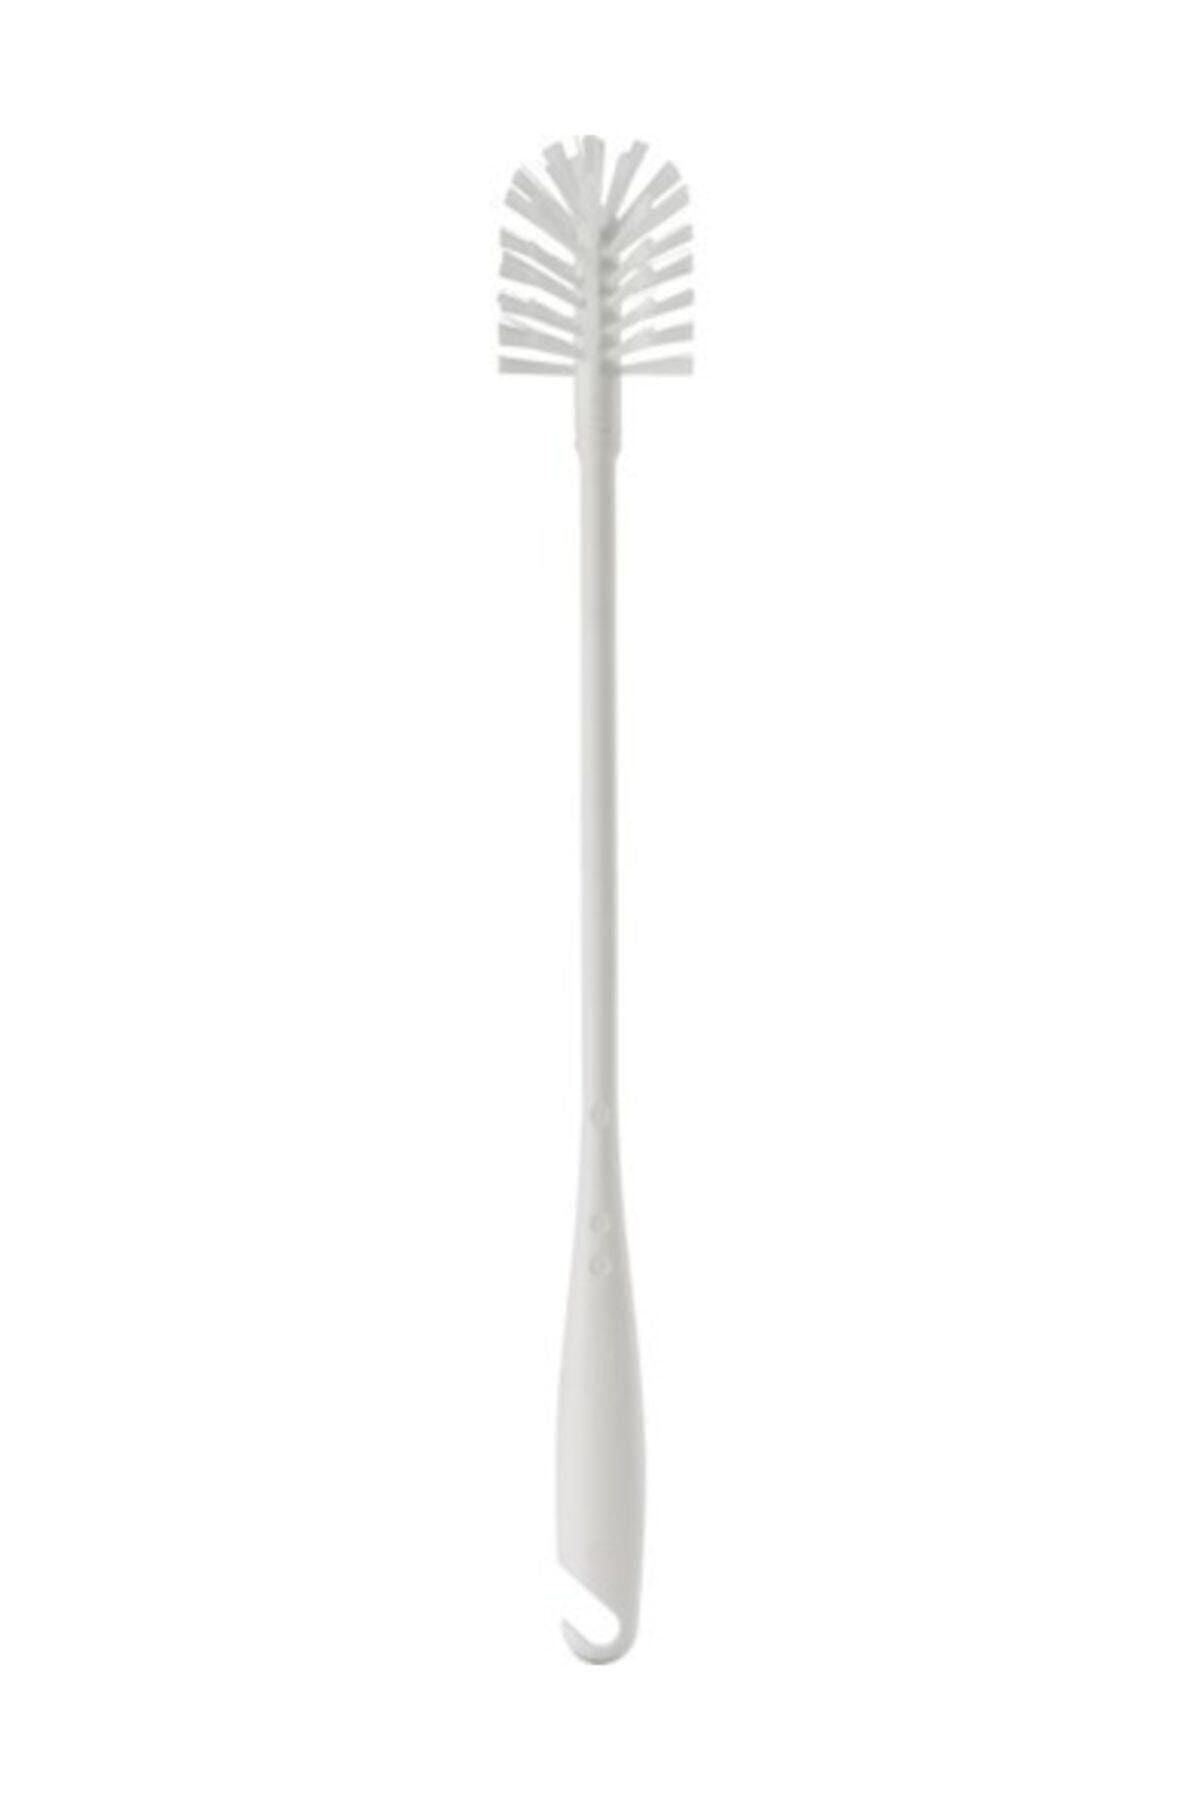 BARBUN Ikea Medelvag Şişe Kavanoz Bulaşık Temizleme Fırçası Kargo Bedava